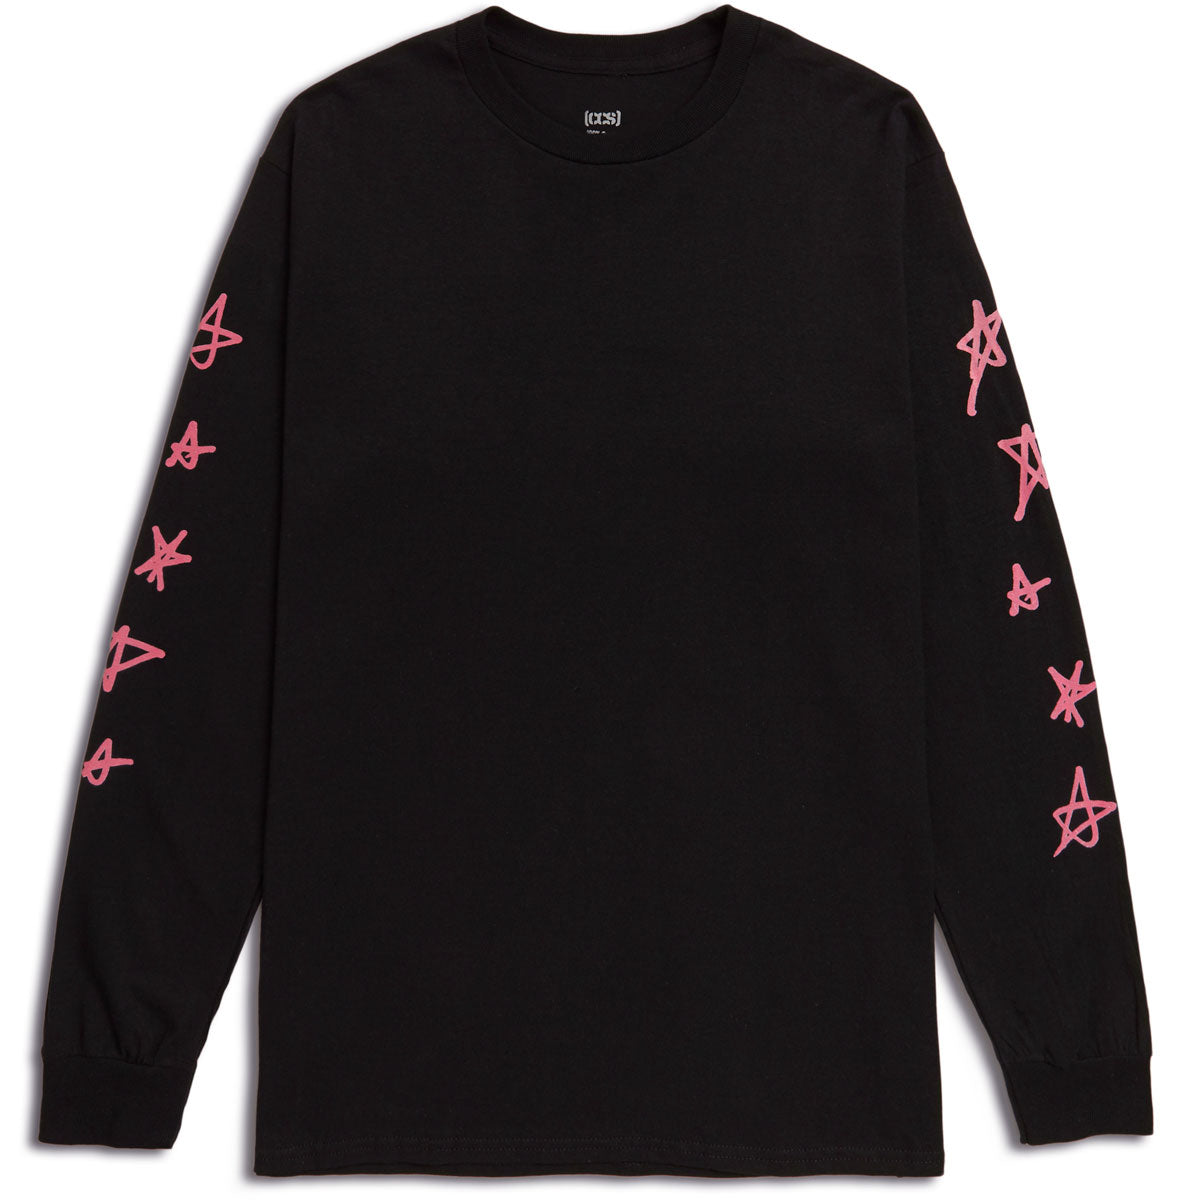 CCS Stars Long Sleeve T-Shirt - Black/Pink - XL image 1